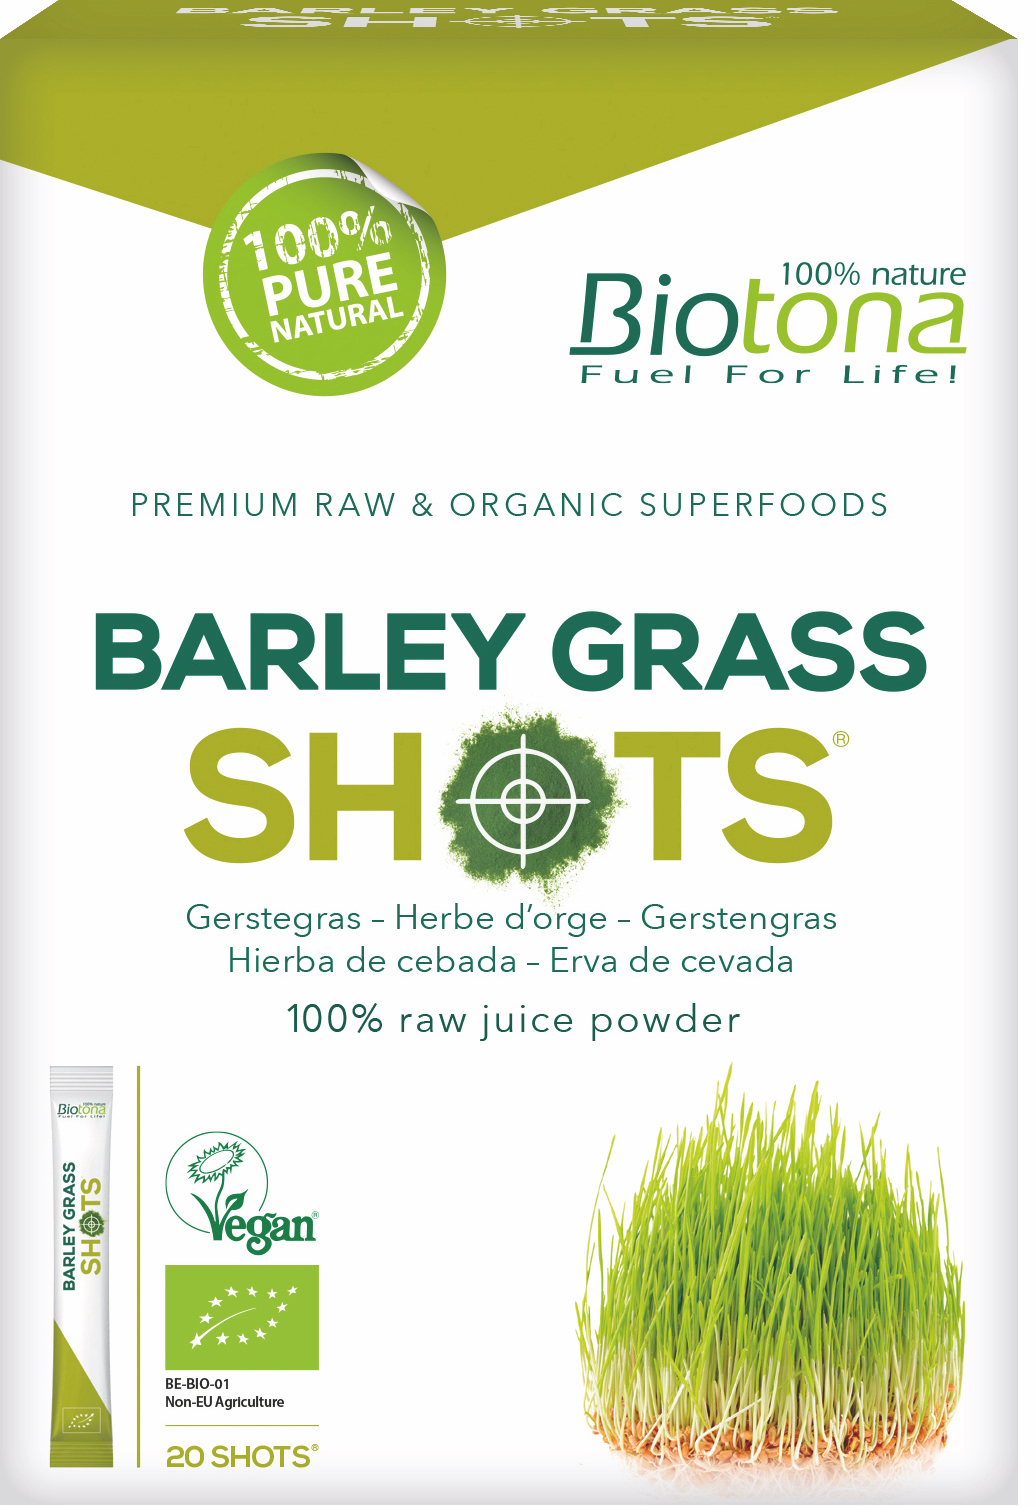 Biotona Barley Grass Shots